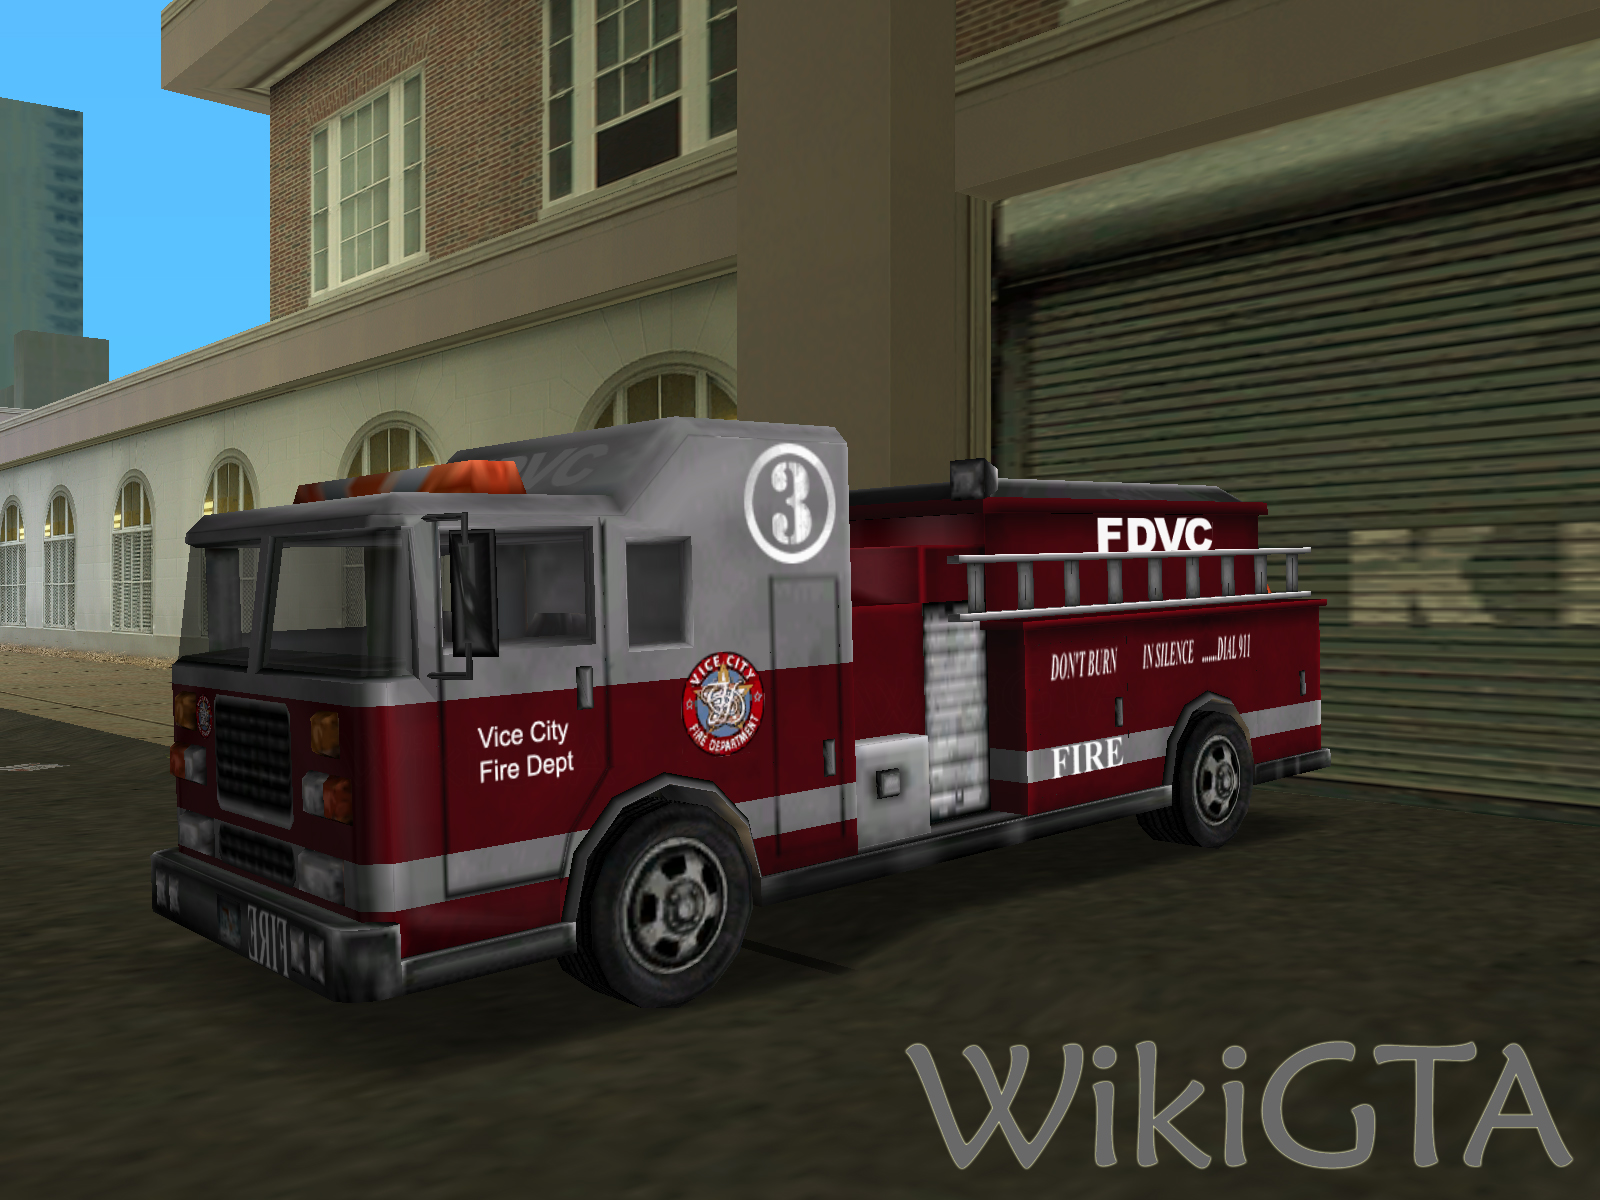 VC firetruck.jpg